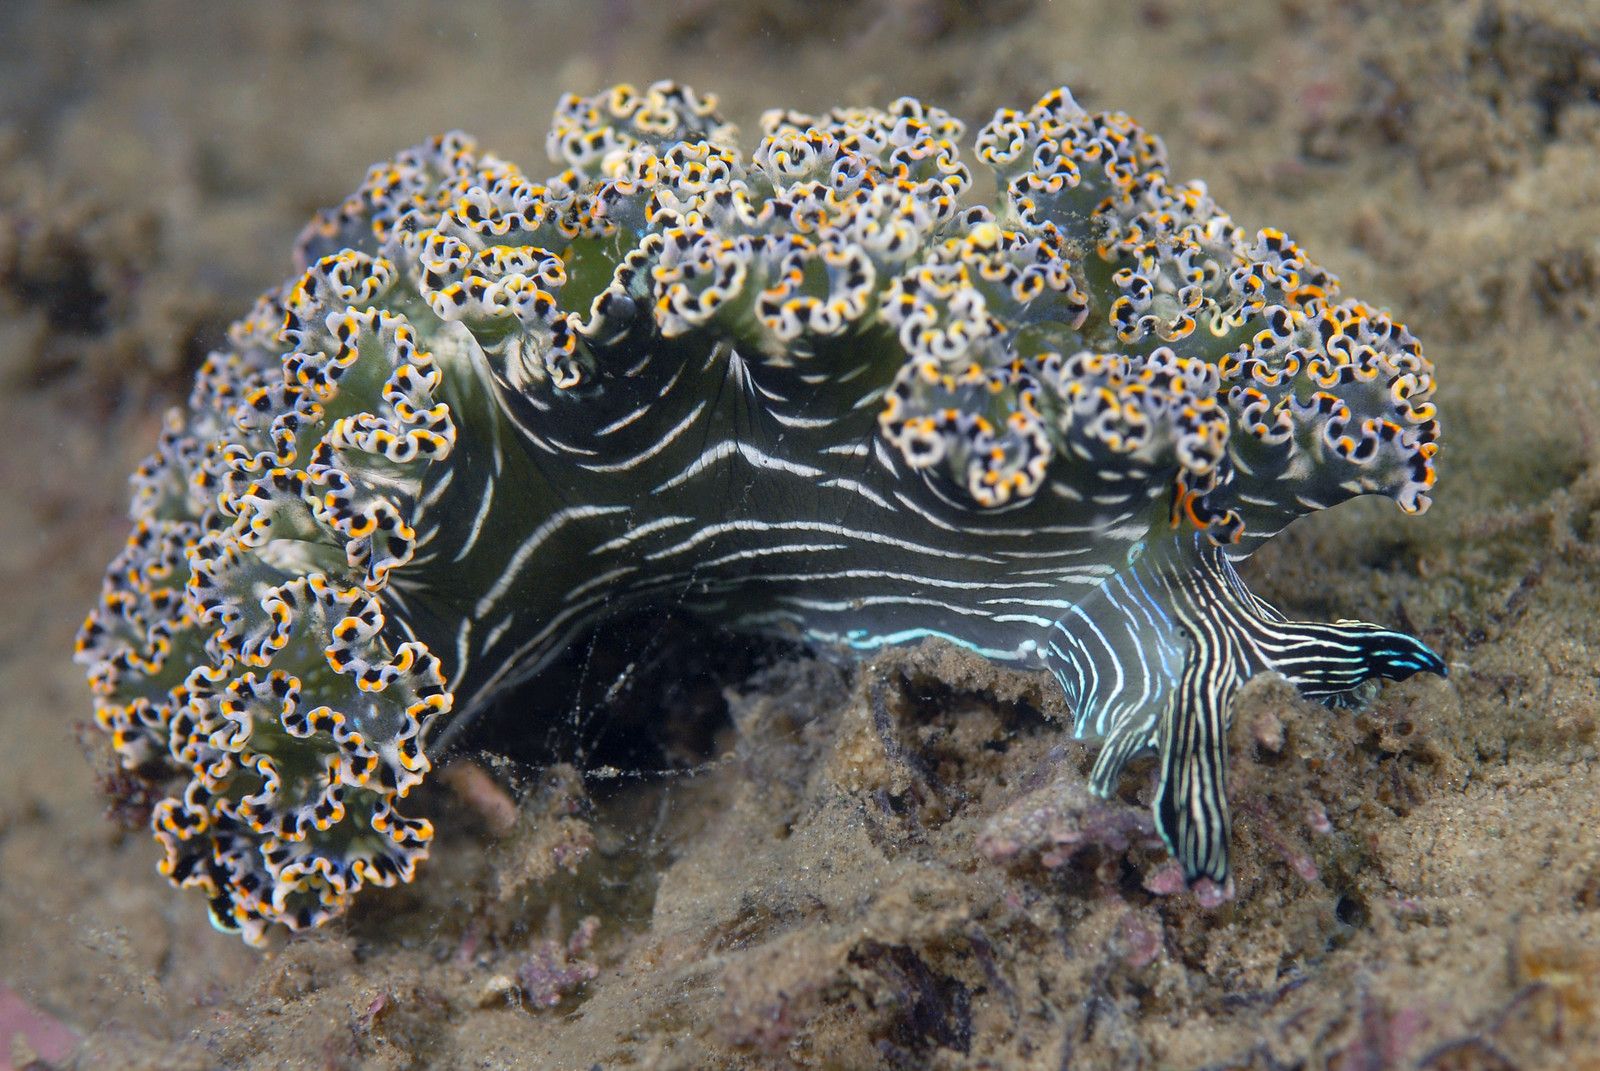 nudibranch seaslug Elys-diomedea by diverkevin